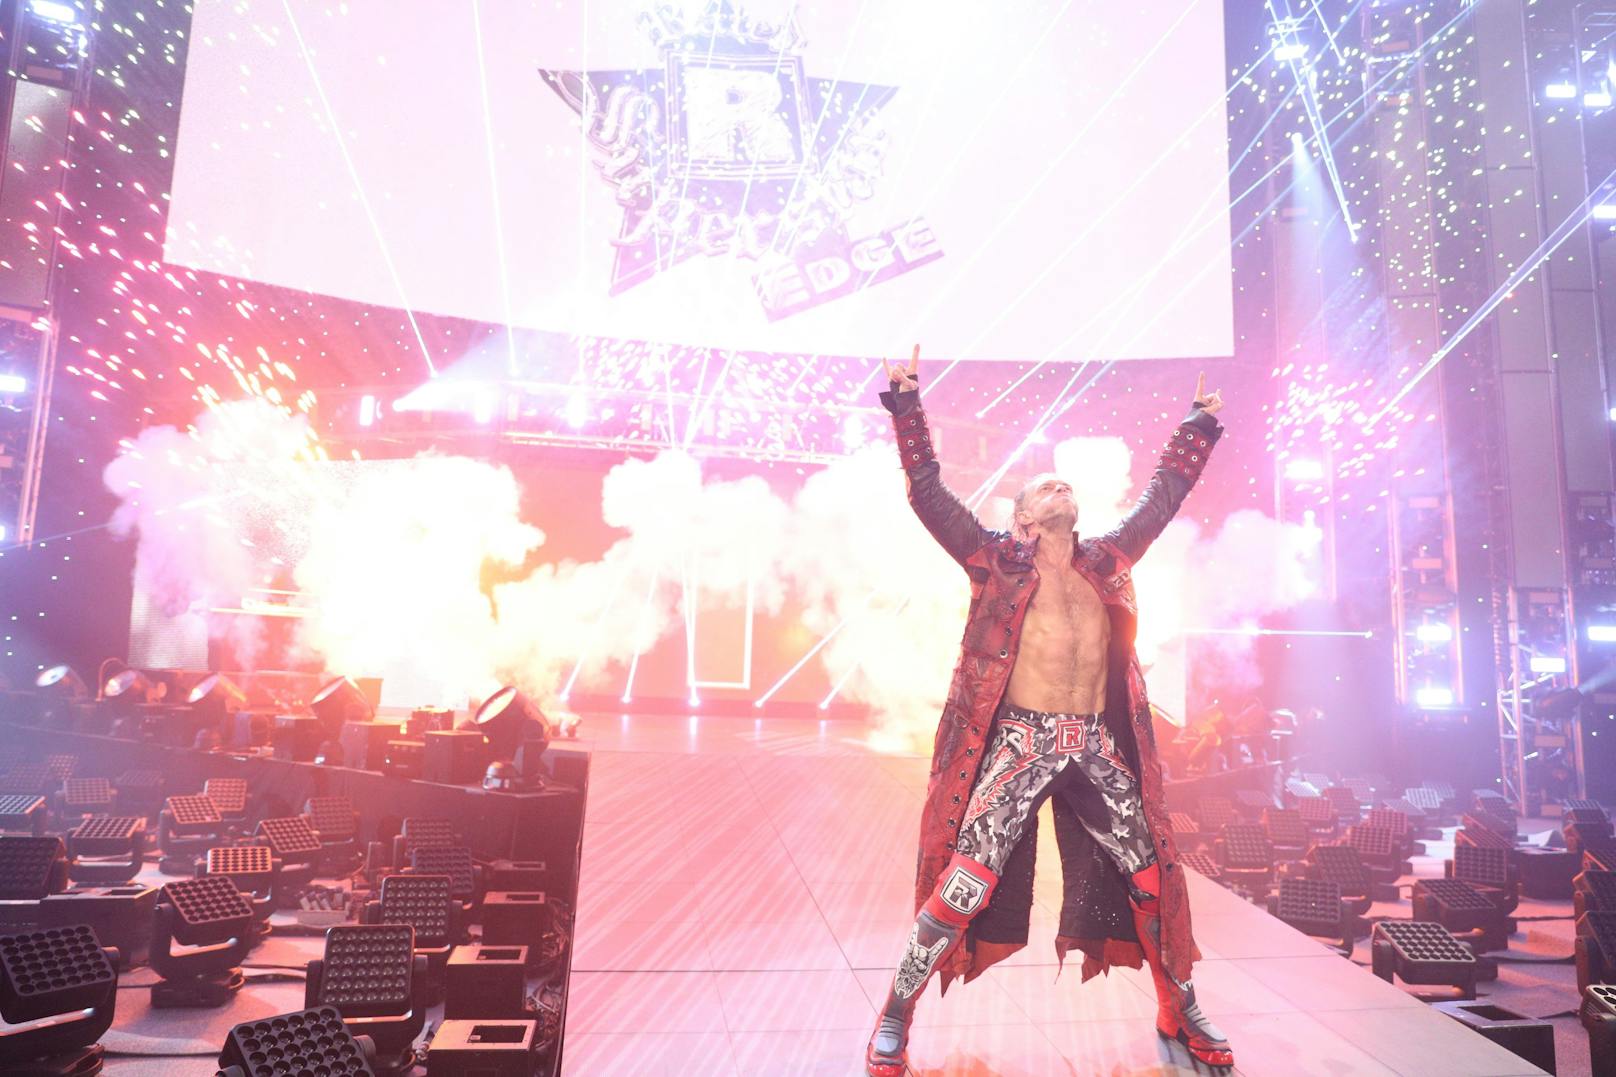 WWE Royal Rumble - Die besten Bilder